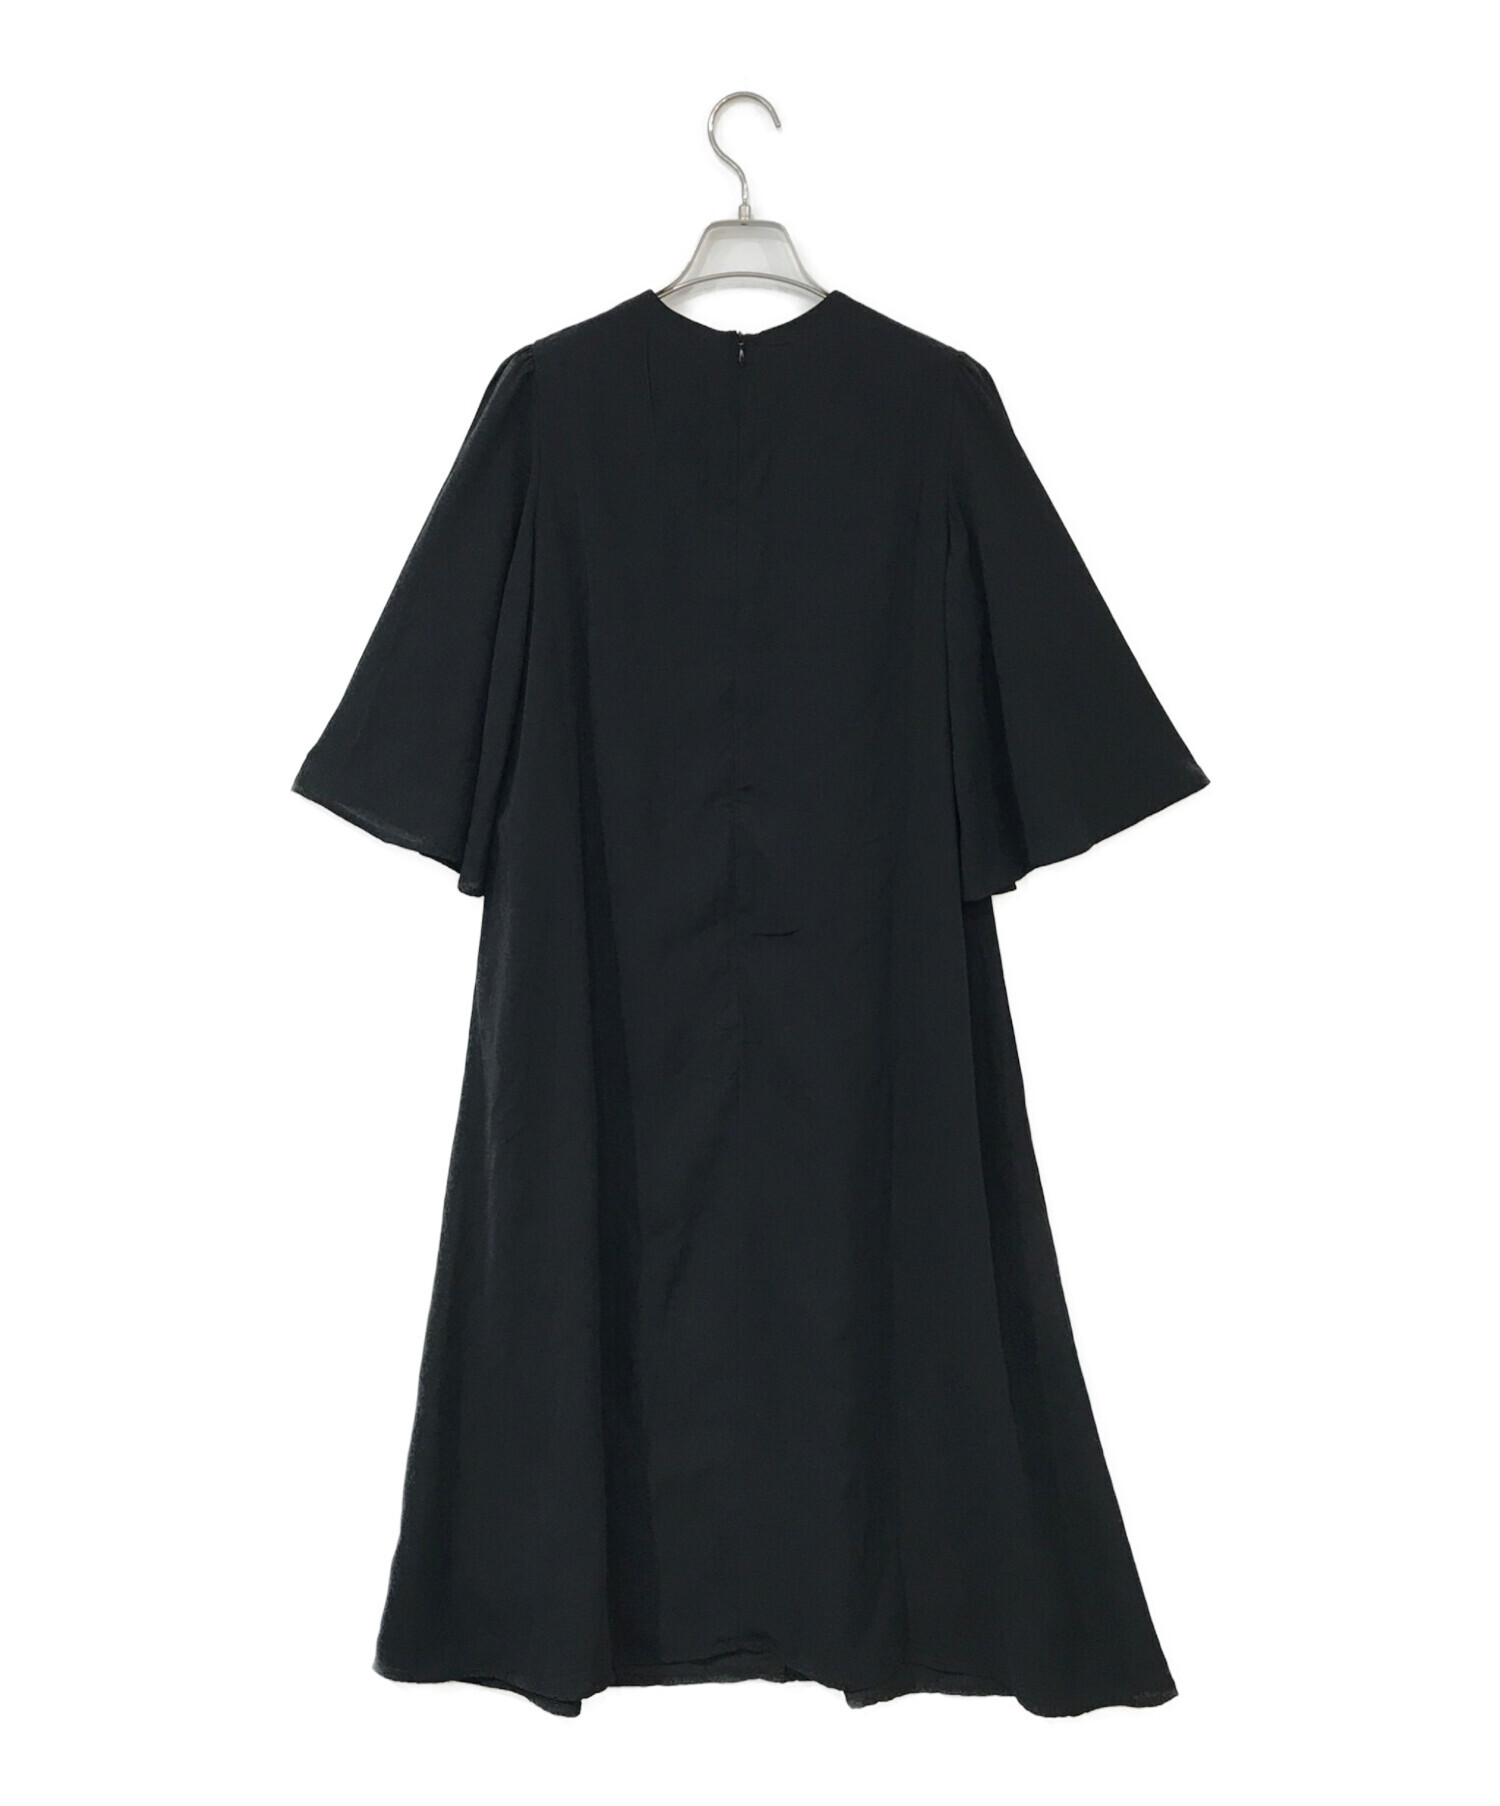 MARIHA (マリハ) 夜のドレス ブラック サイズ:36